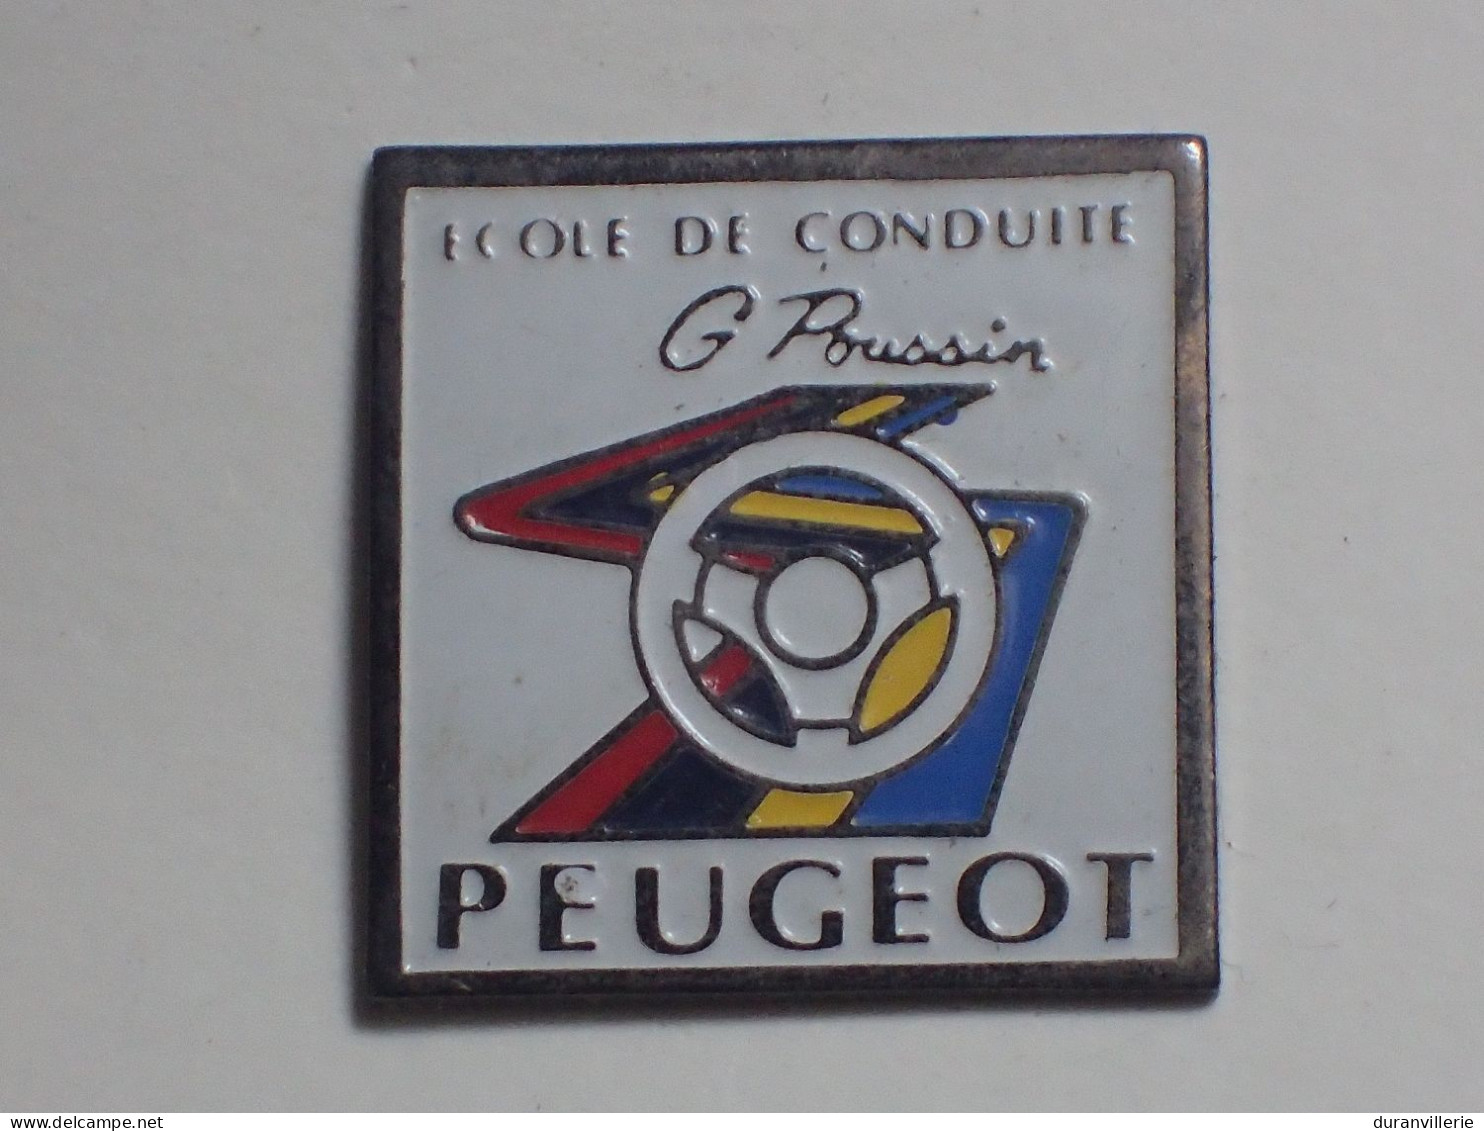 Pin's Peugeot ECOLE DE CONDUITE G POUSSIN - Peugeot